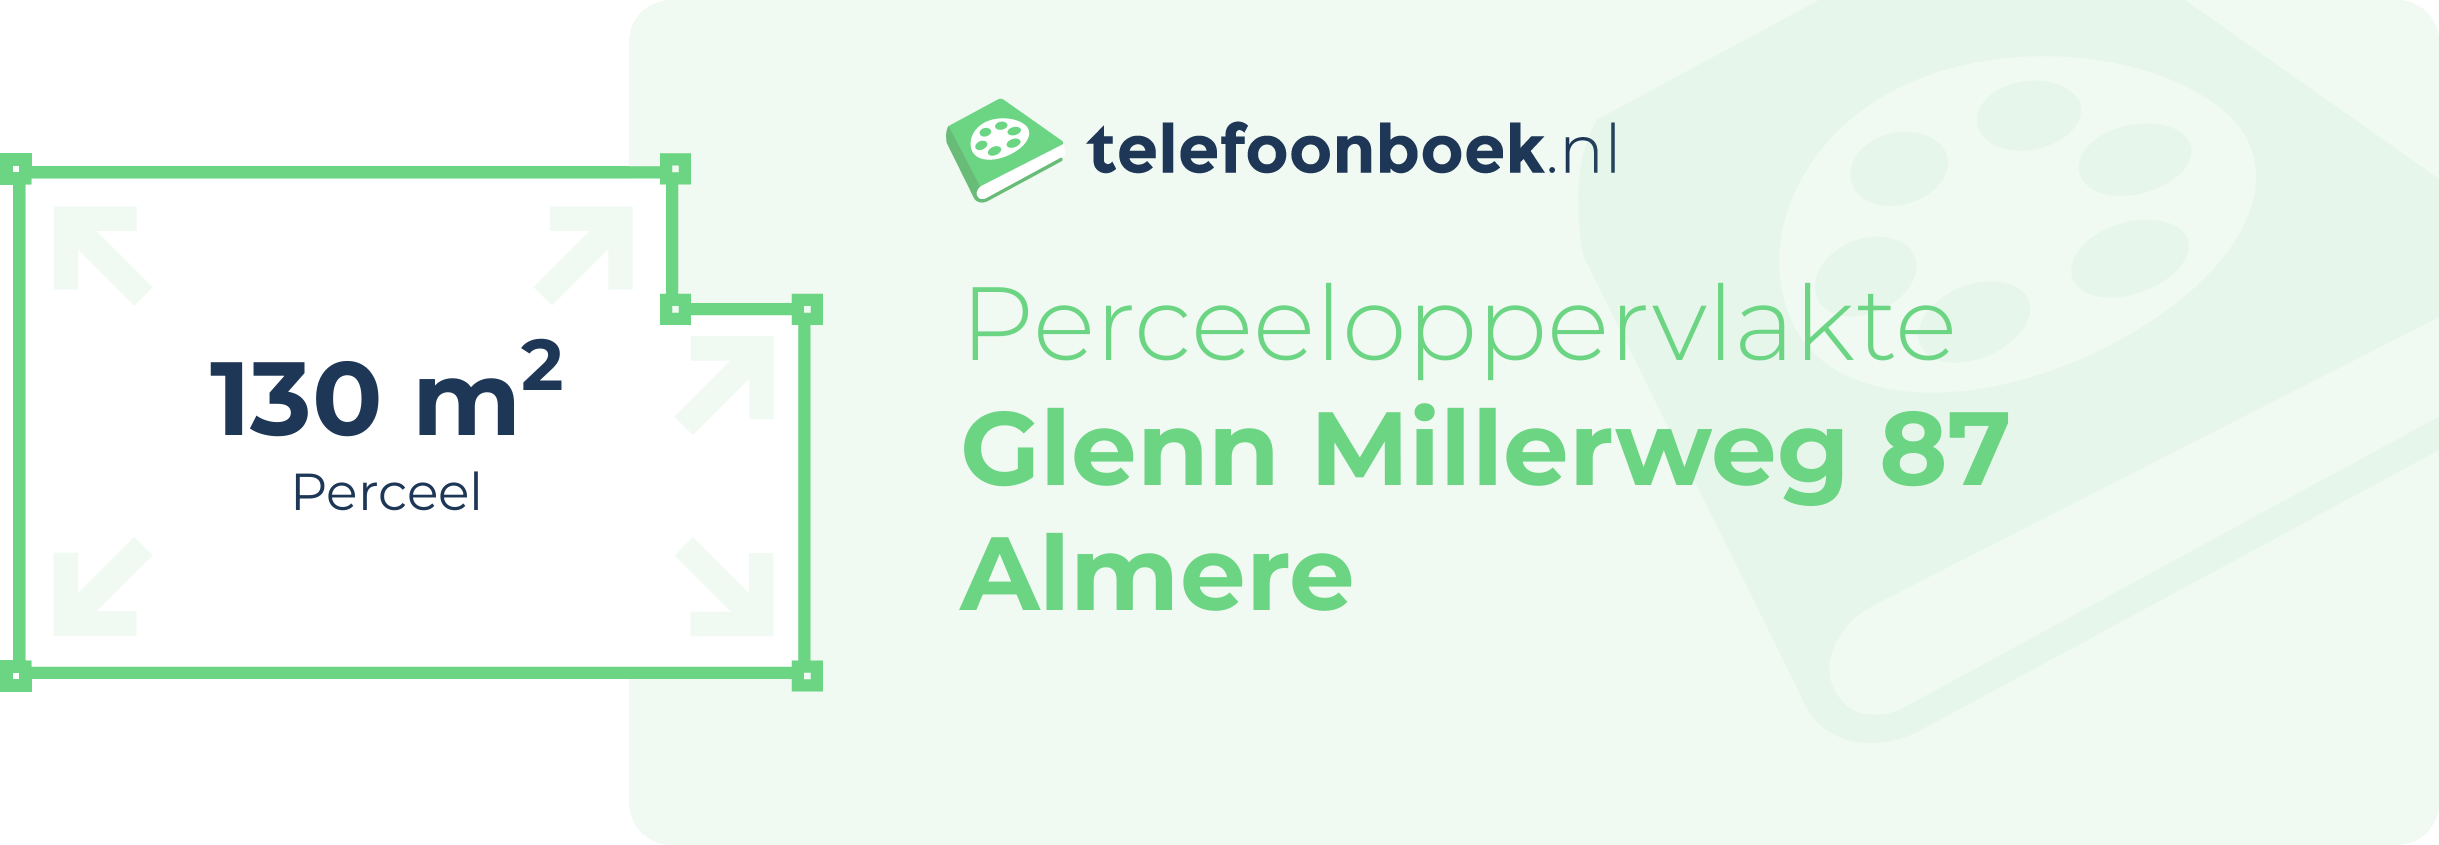 Perceeloppervlakte Glenn Millerweg 87 Almere